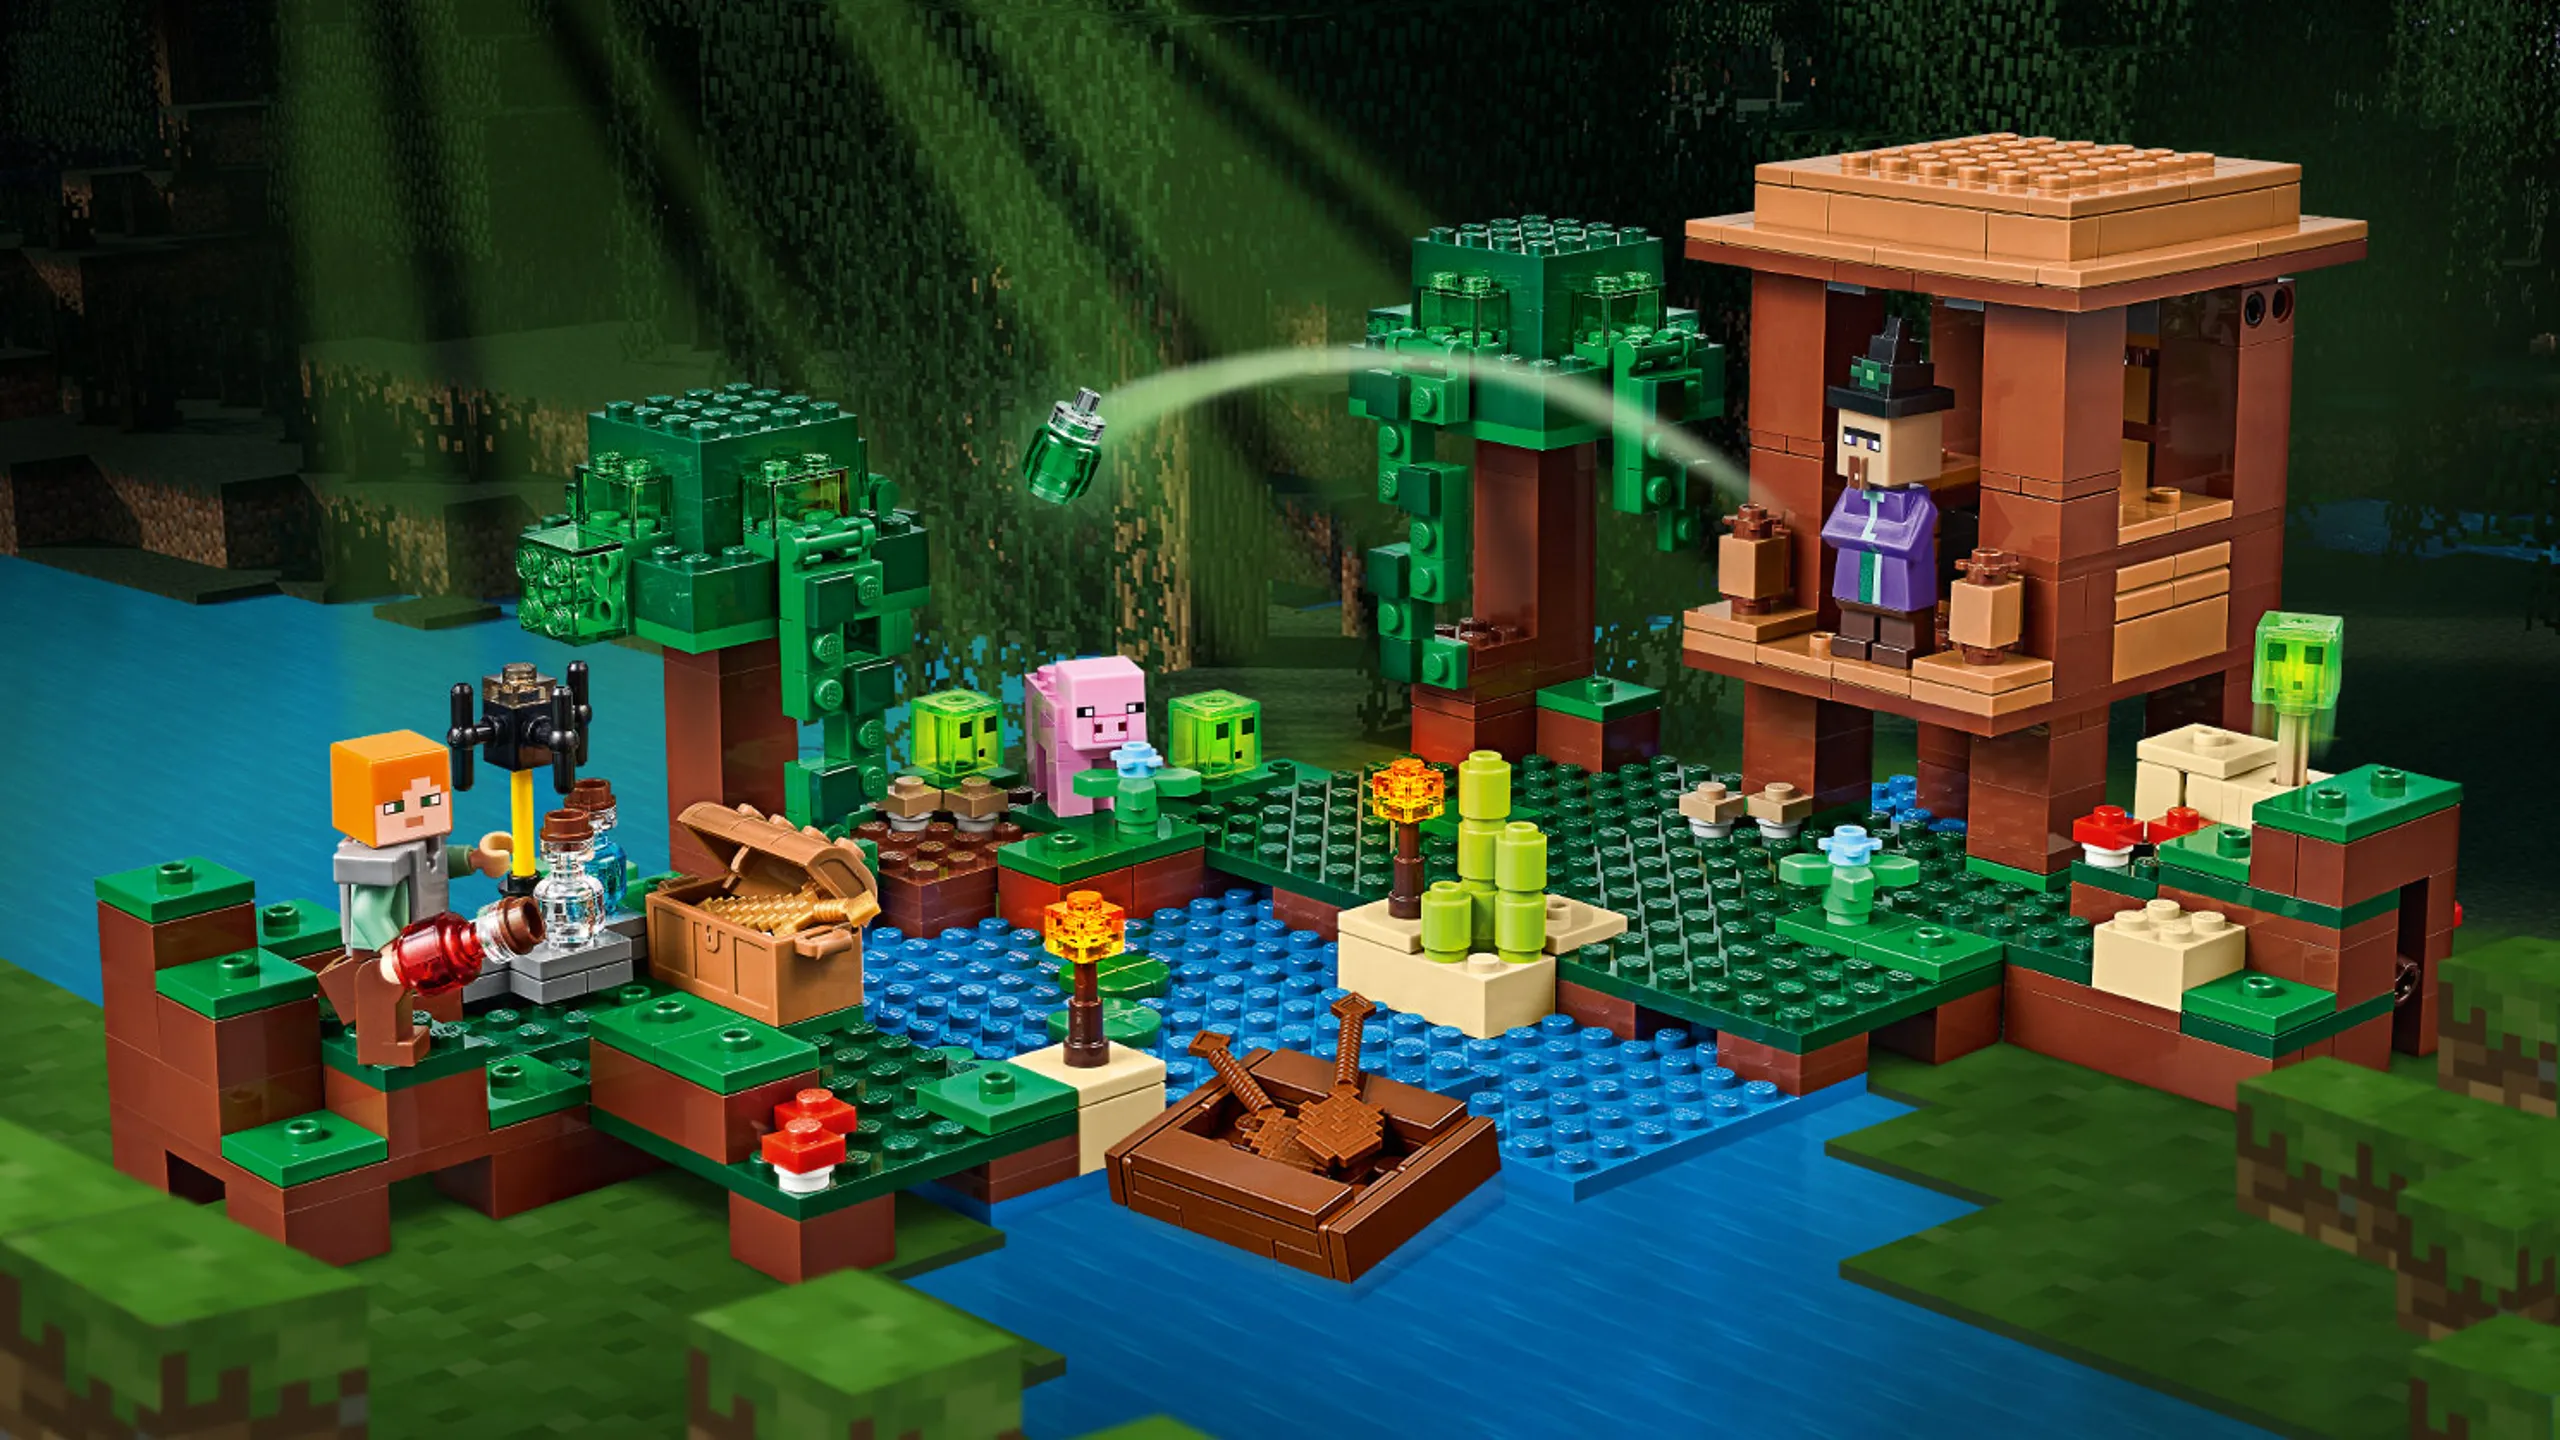 LEGO, 21178 Minecraft, El Refugio-Zorro, Juguete de Construcción